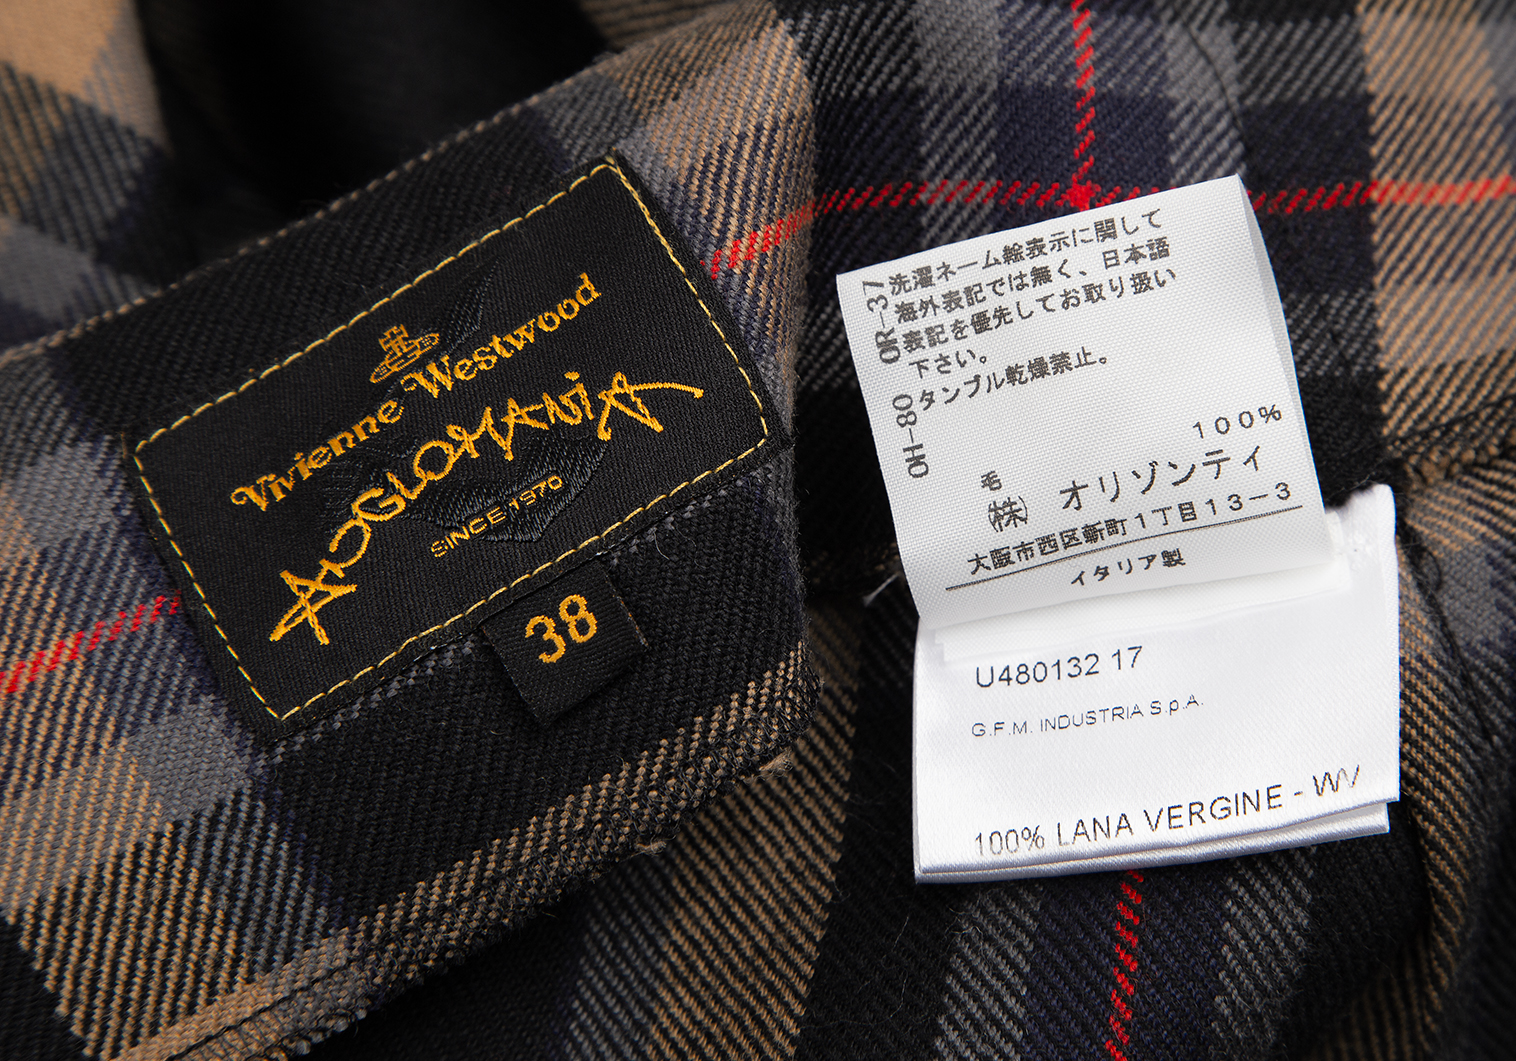 36ウエストヴィヴィアンウエストウッド アングロマニア 日本製 フレア スカート 36 グレー Vivienne Westwood ANGLOMANIA レディース   【221120】